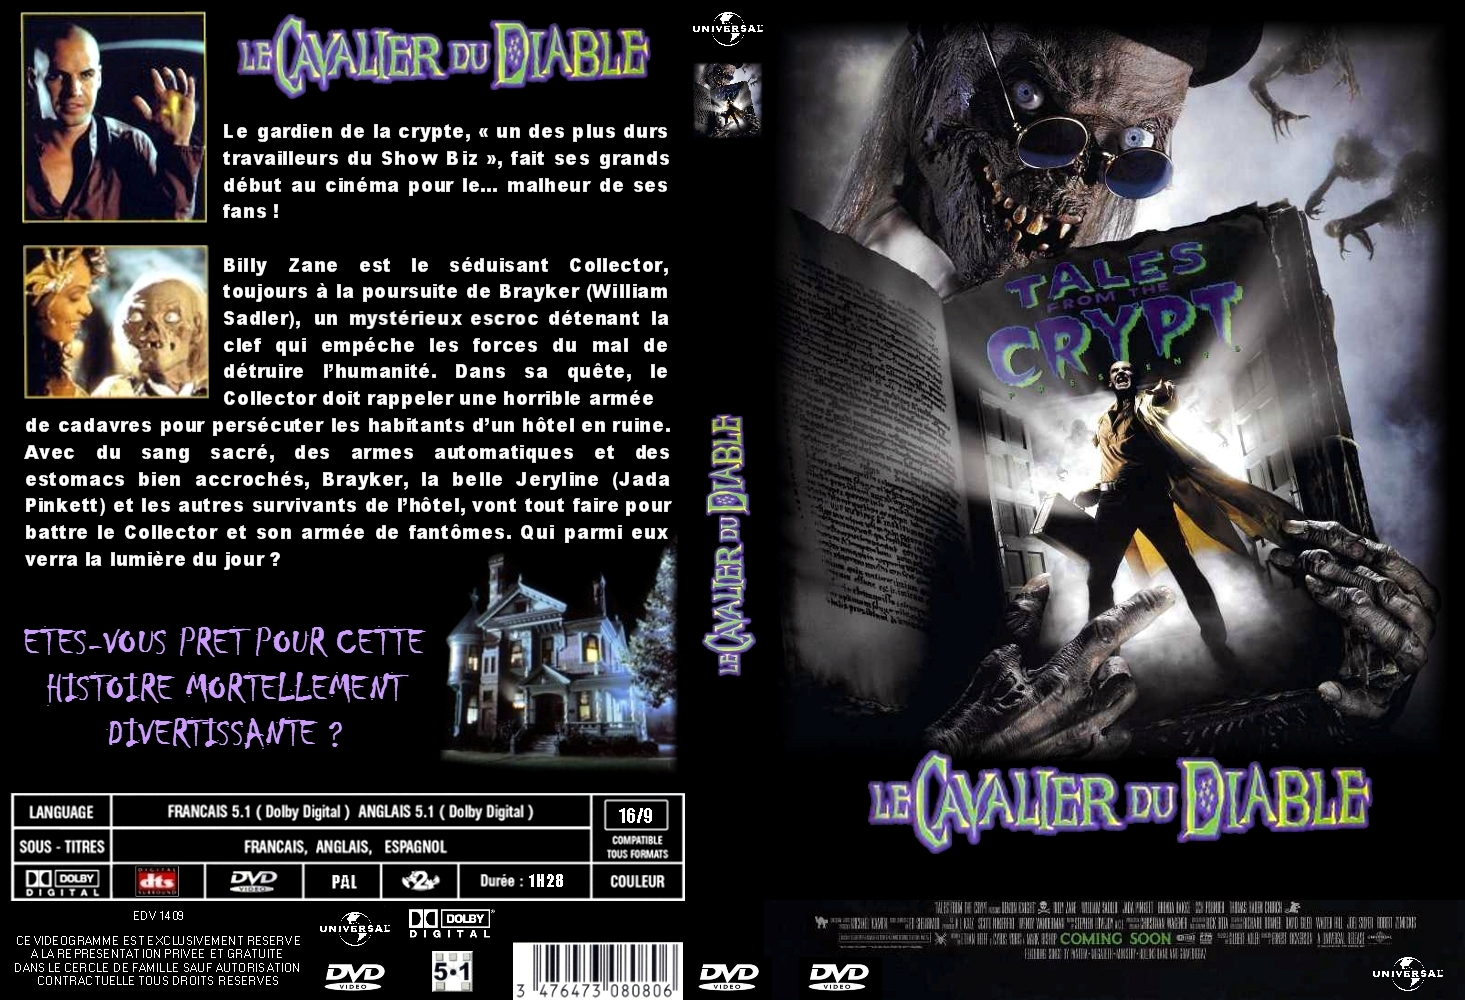 Jaquette DVD Le cavalier du diable (les contes de la crypte film 1) custom